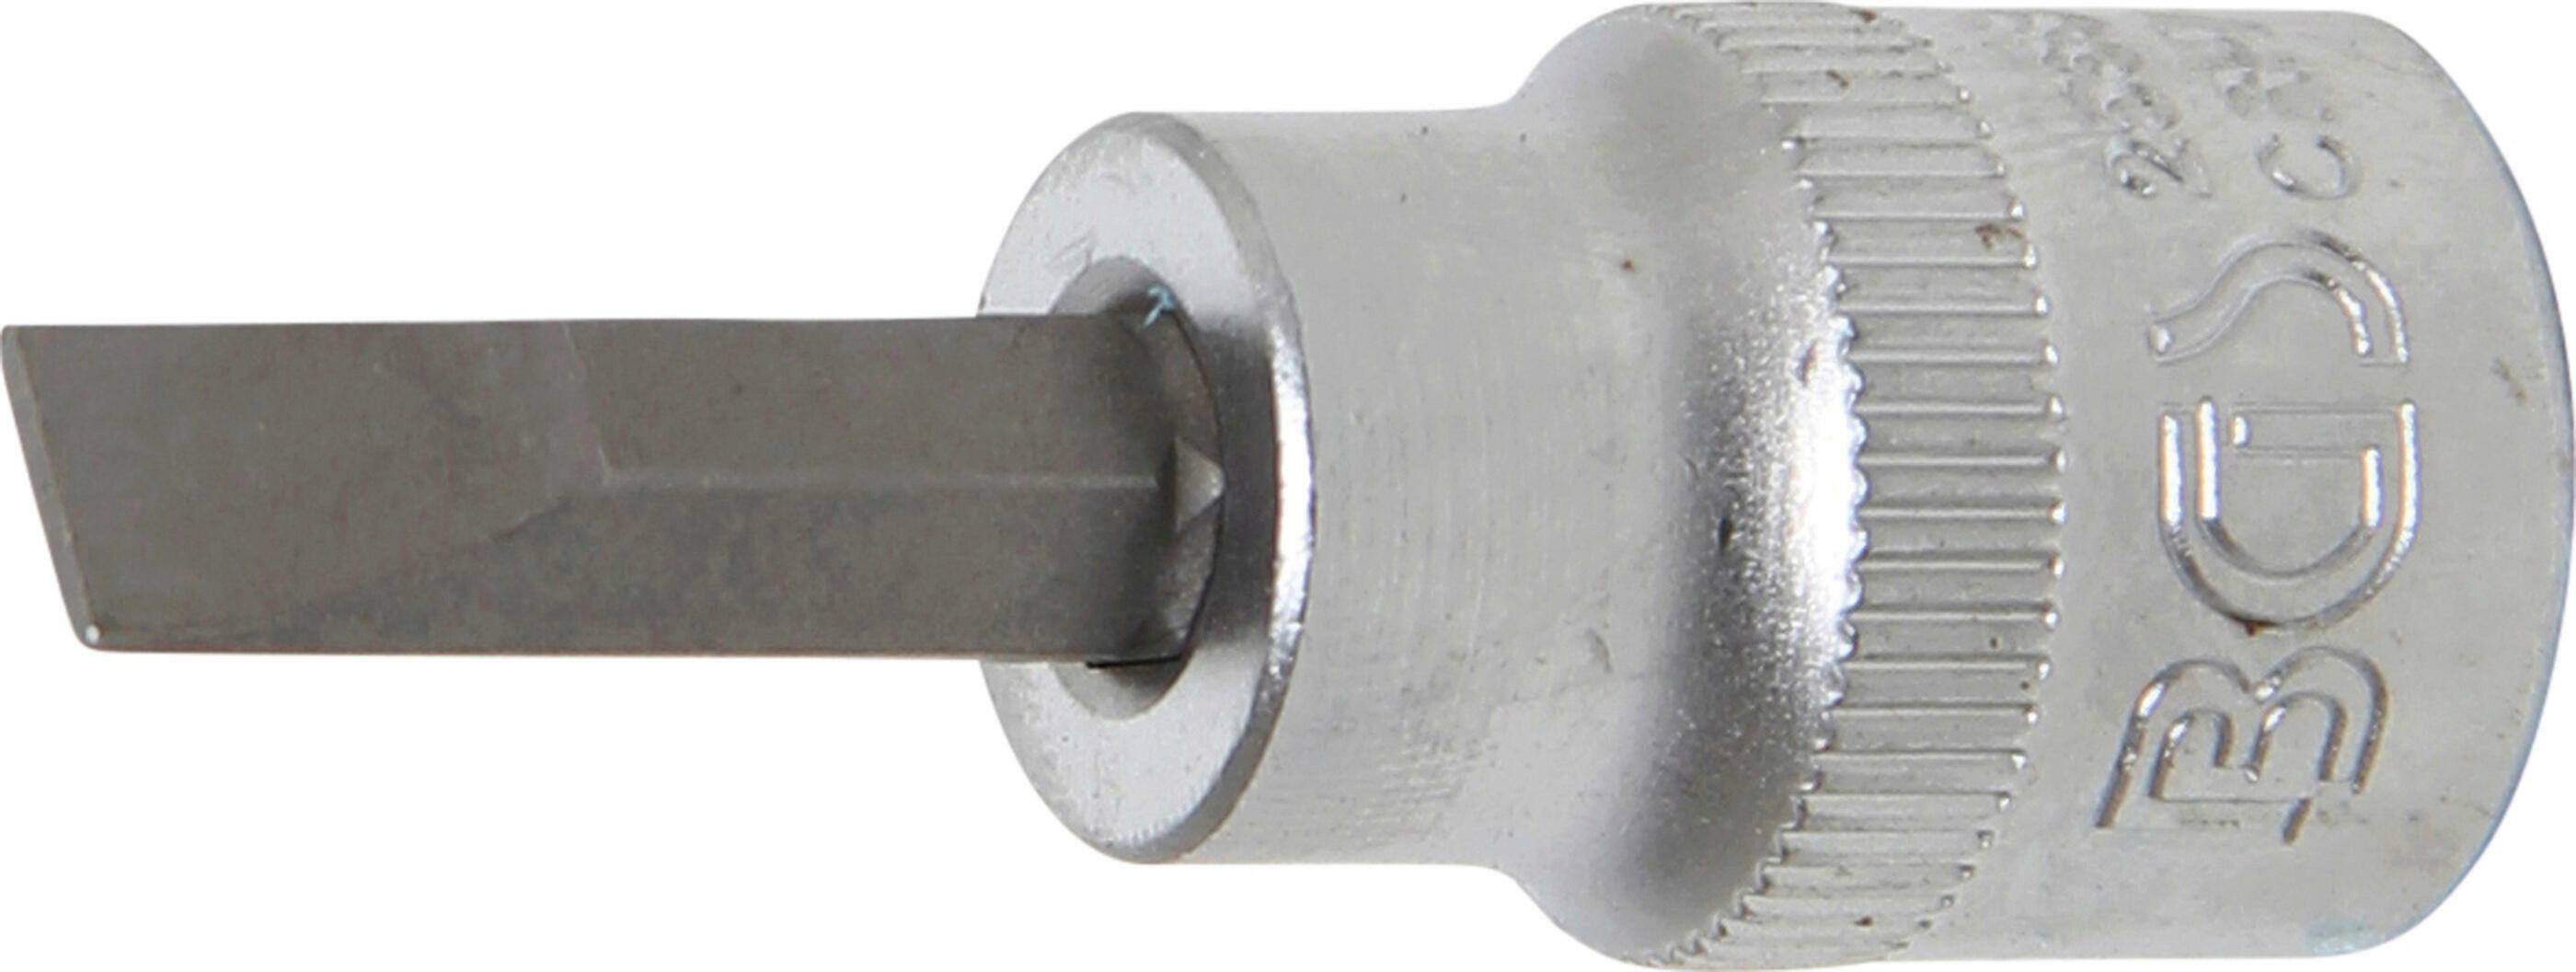 Bit-Einsatz | Antrieb Innenvierkant 10 mm (3/8") | Schlitz 7 mm